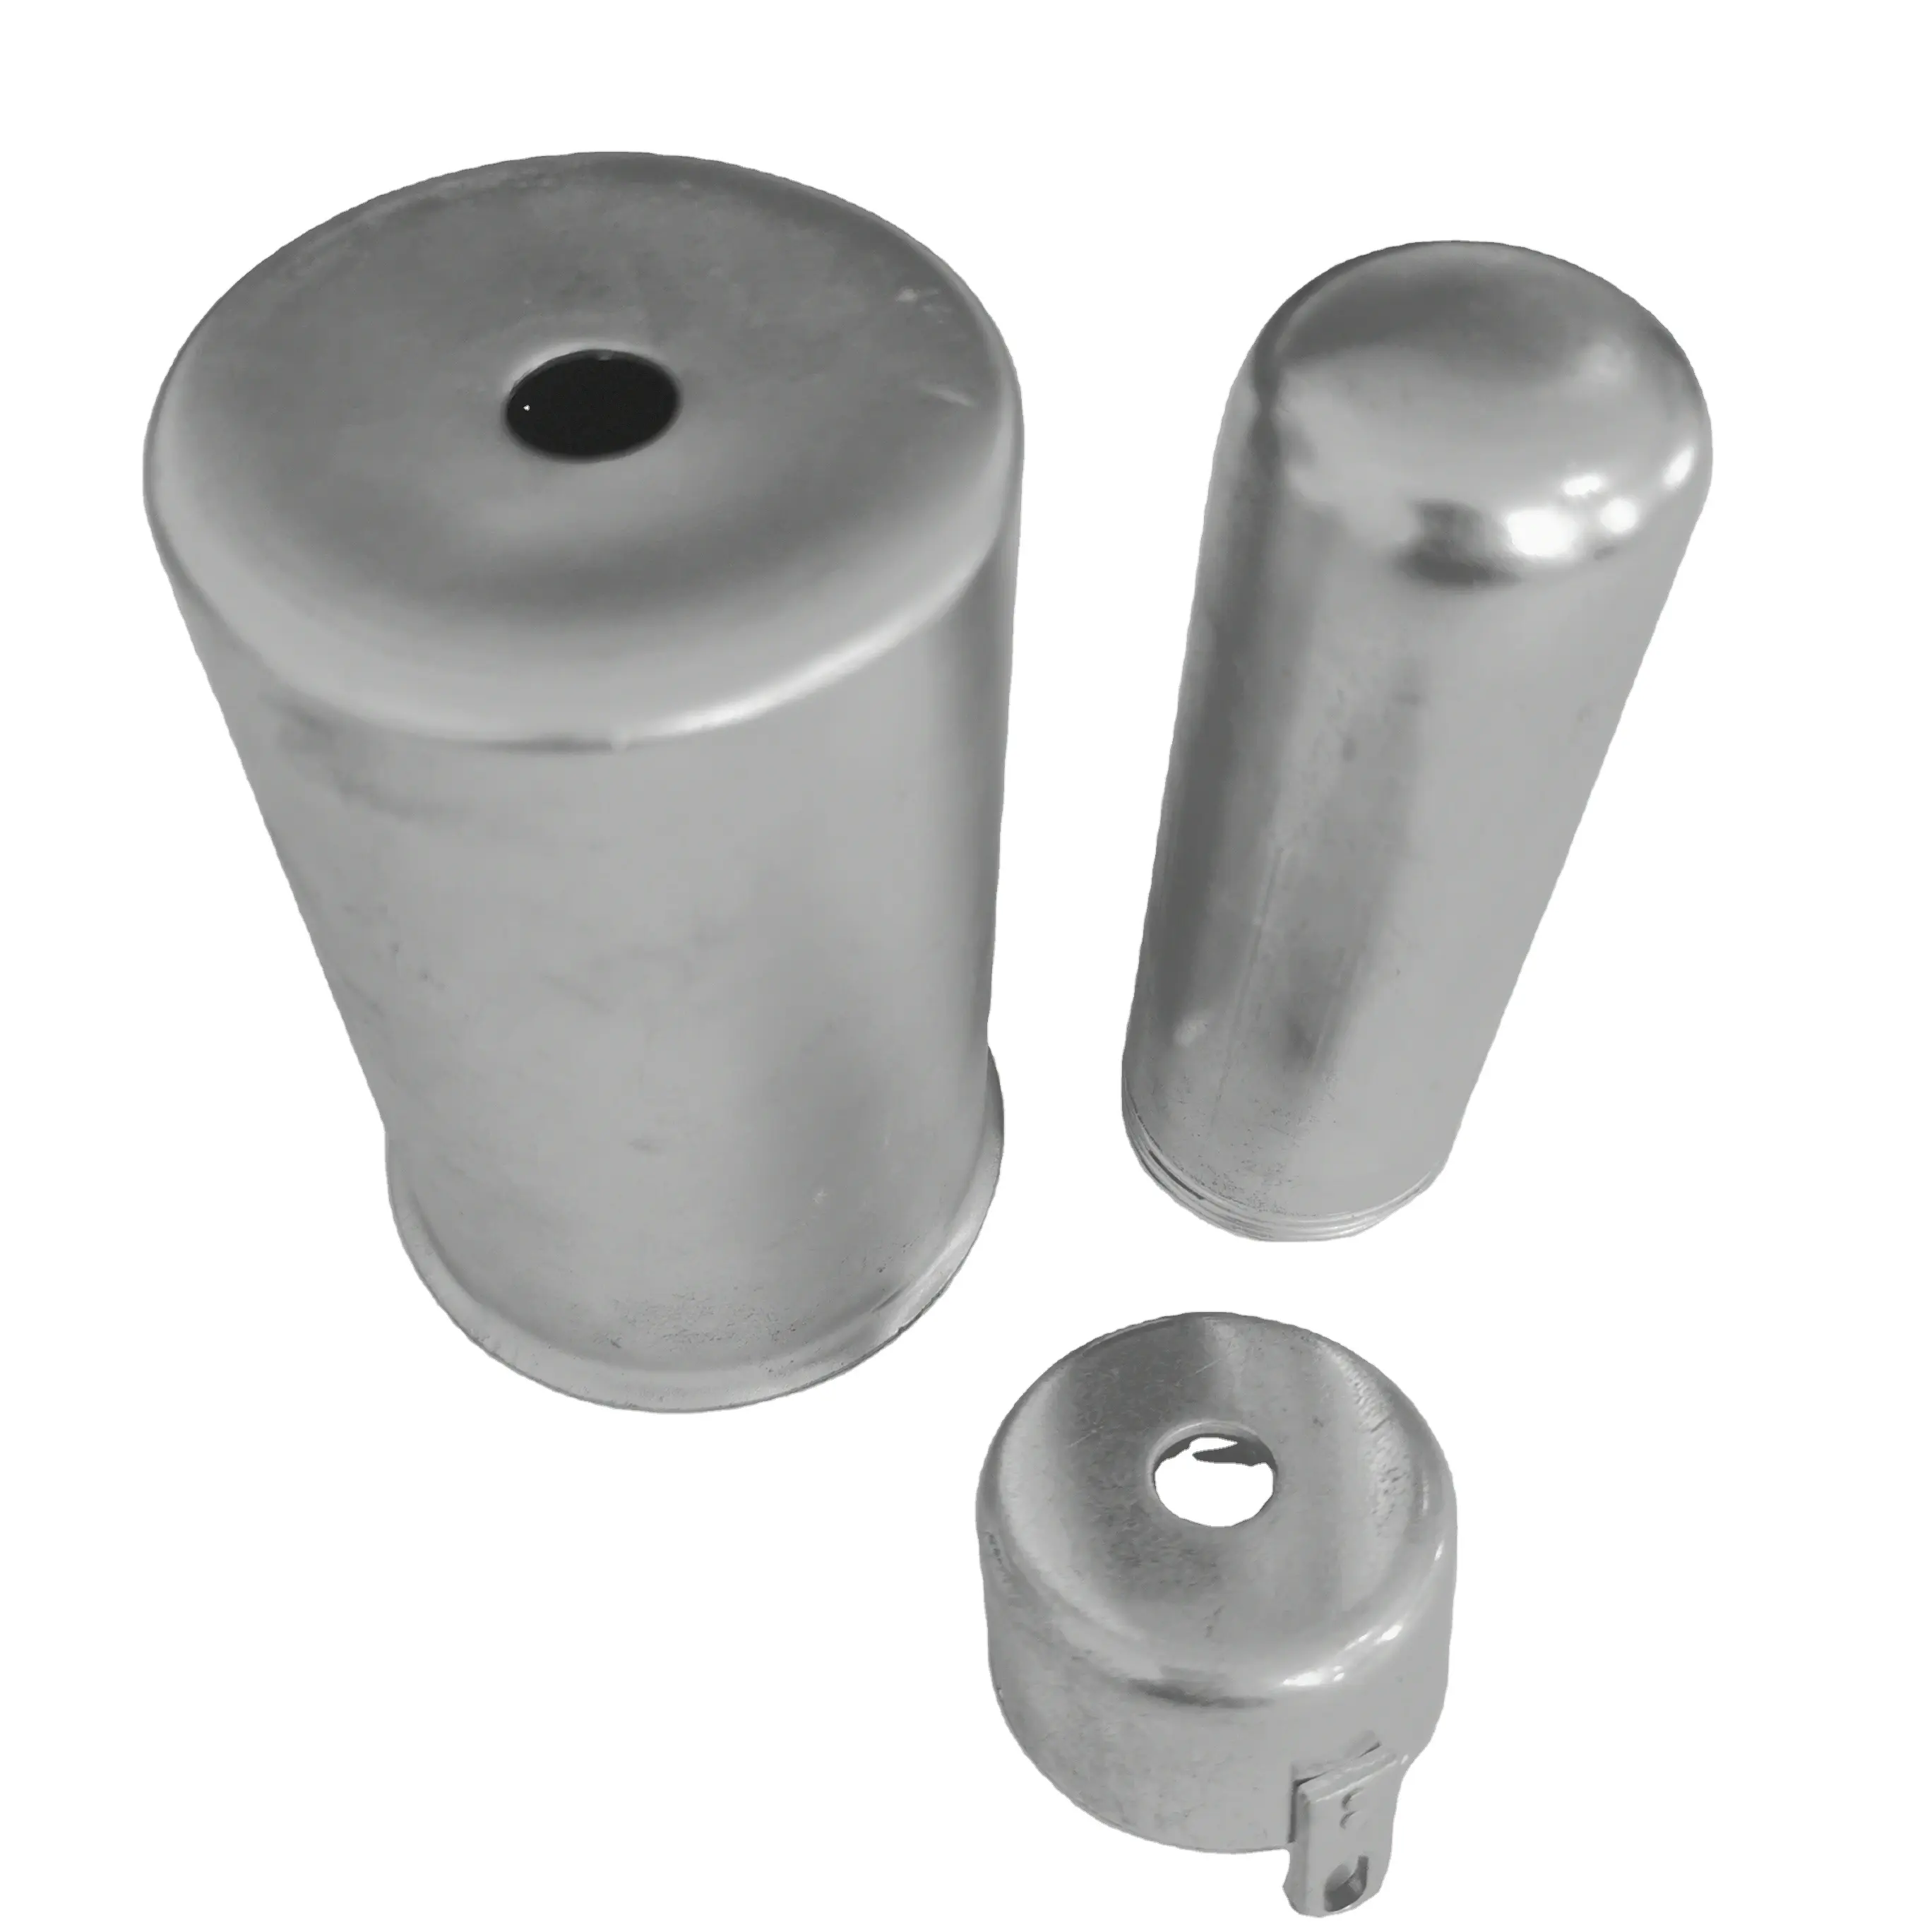 OEM ODM fabrica peças de desenho profundo em aço inoxidável e alumínio produtos altamente polidos desenhos profundos